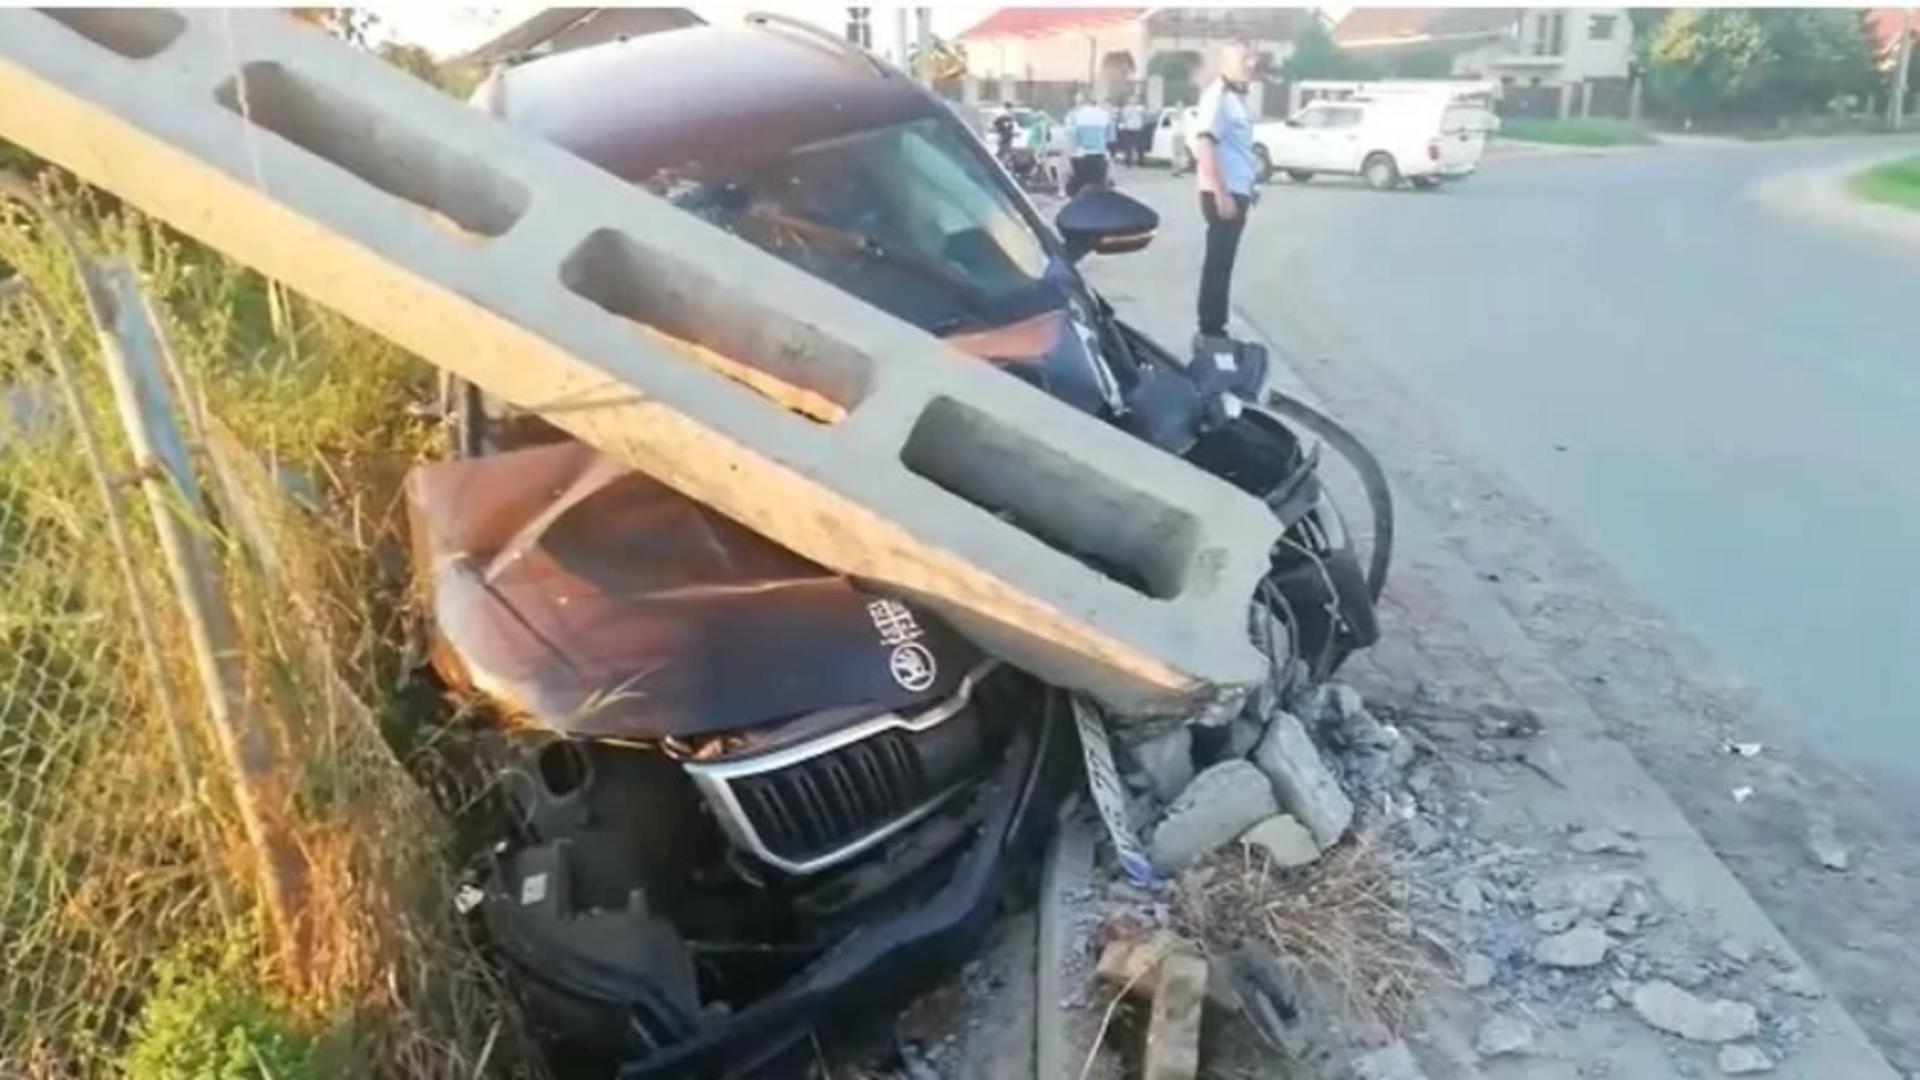 Impactul cu mașina preotului a doborât un stâlp de electricitate. Foto: stiriest.ro